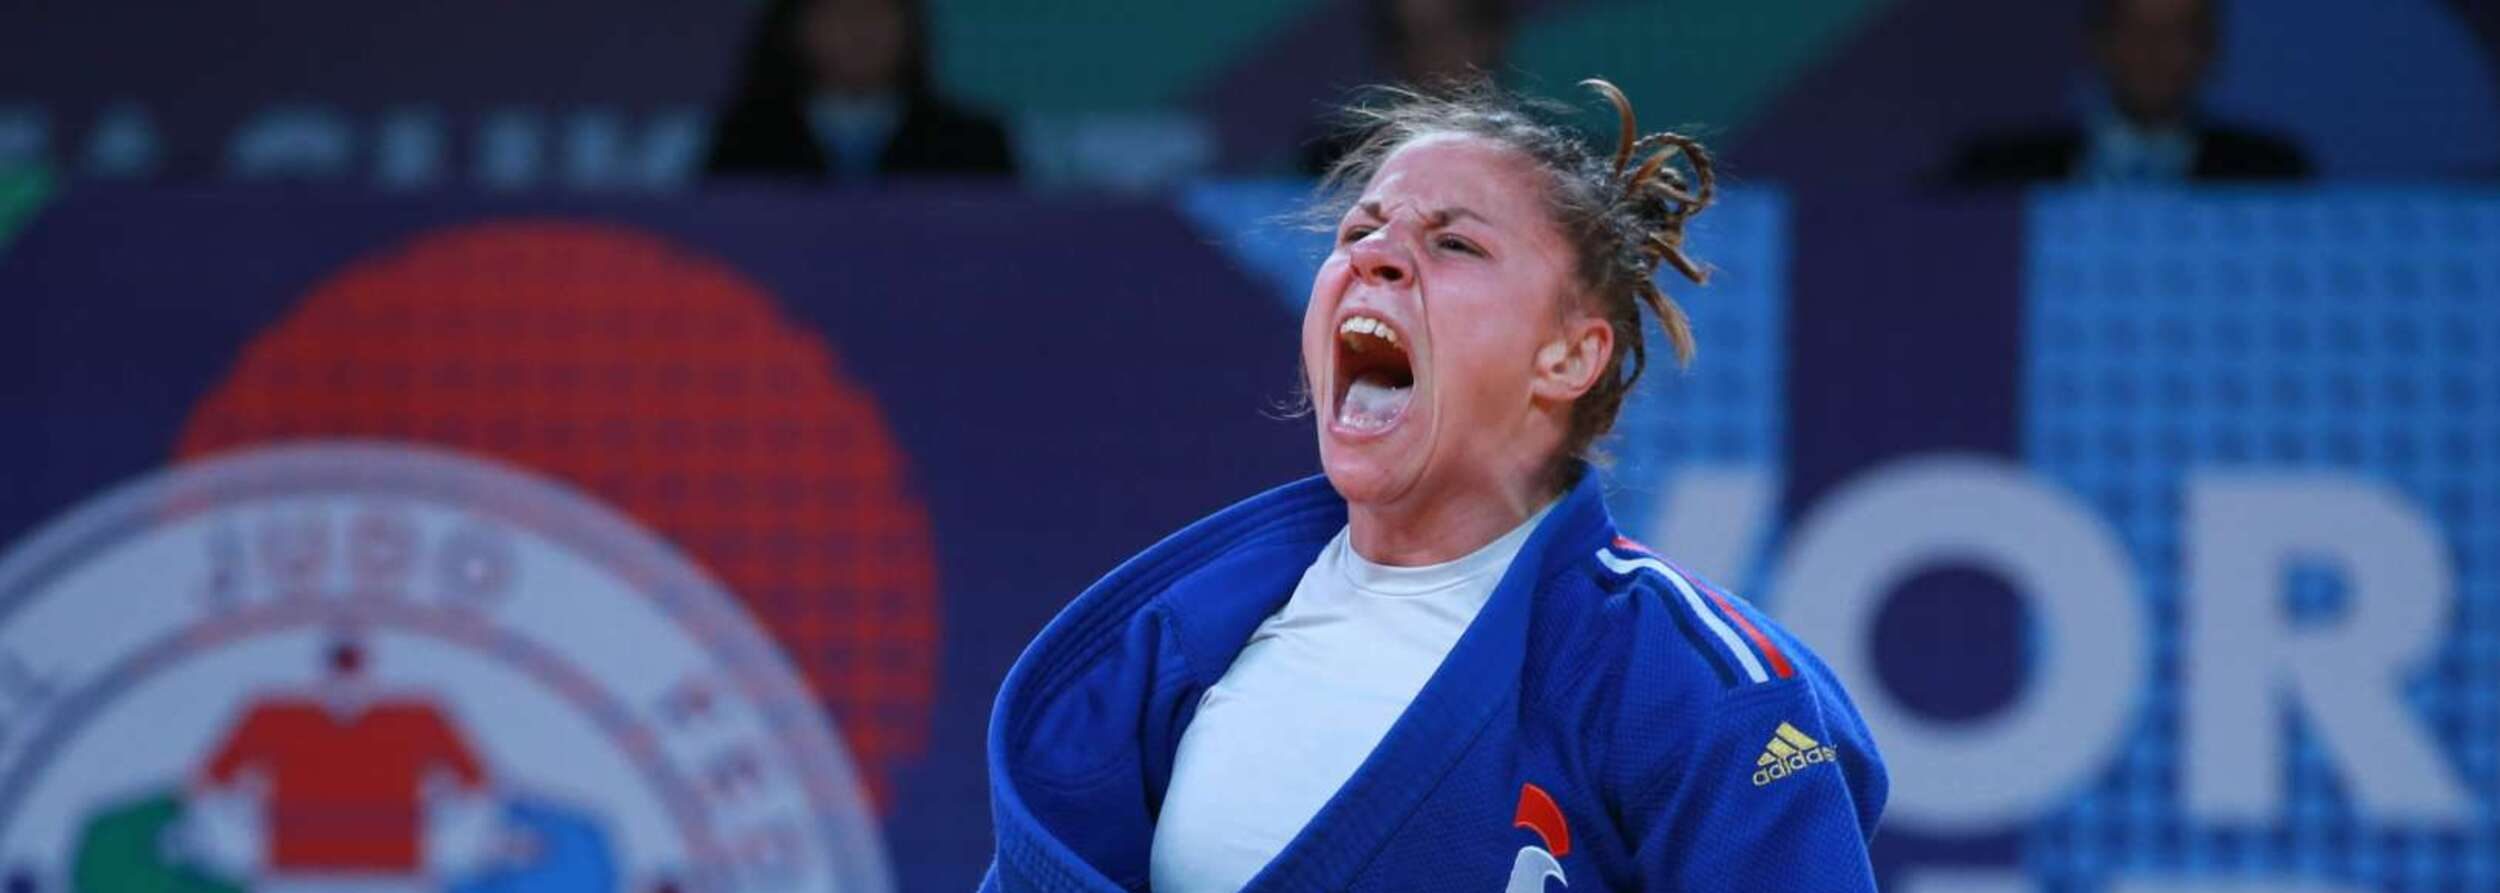 Manon Deketer a remporté la médaille de bronze des Championnats du monde de judo